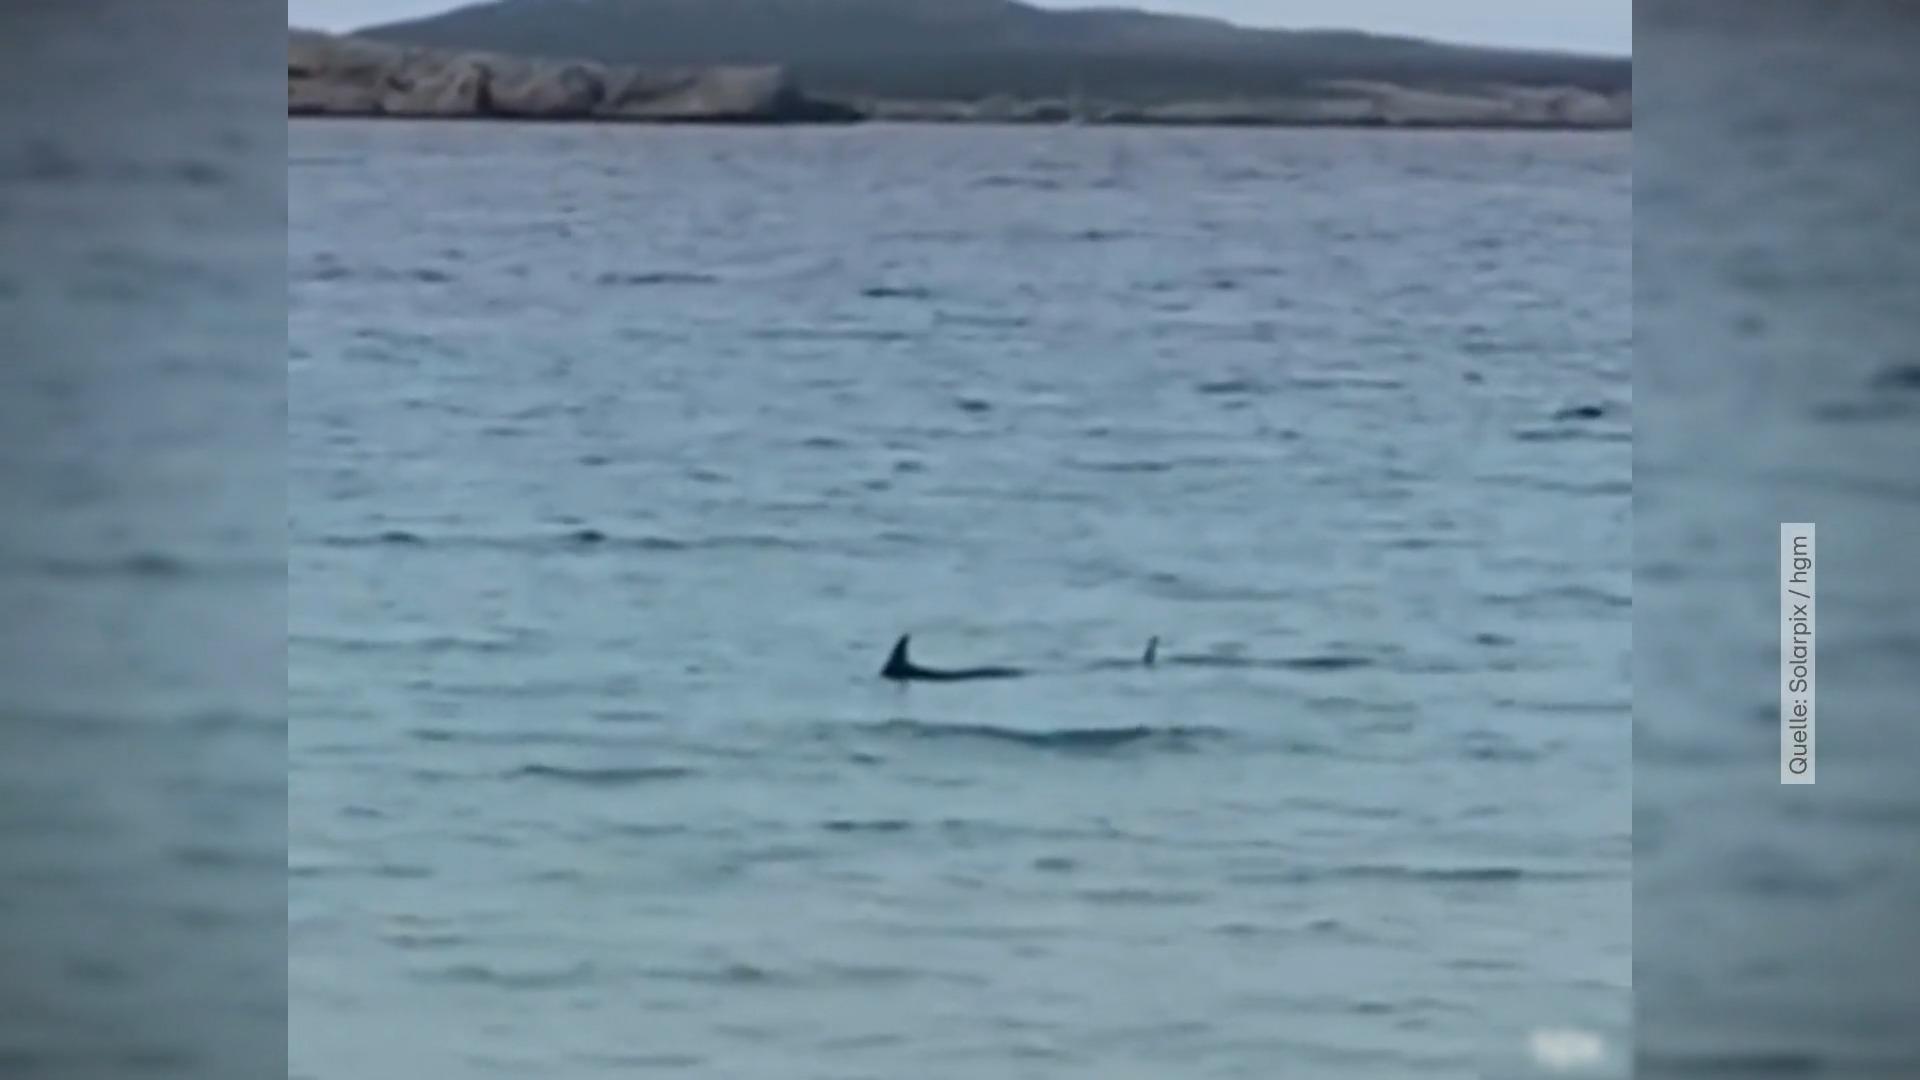 Alerta de tiburones para Menorca - Vuelven a cerrar la playa de Baleares